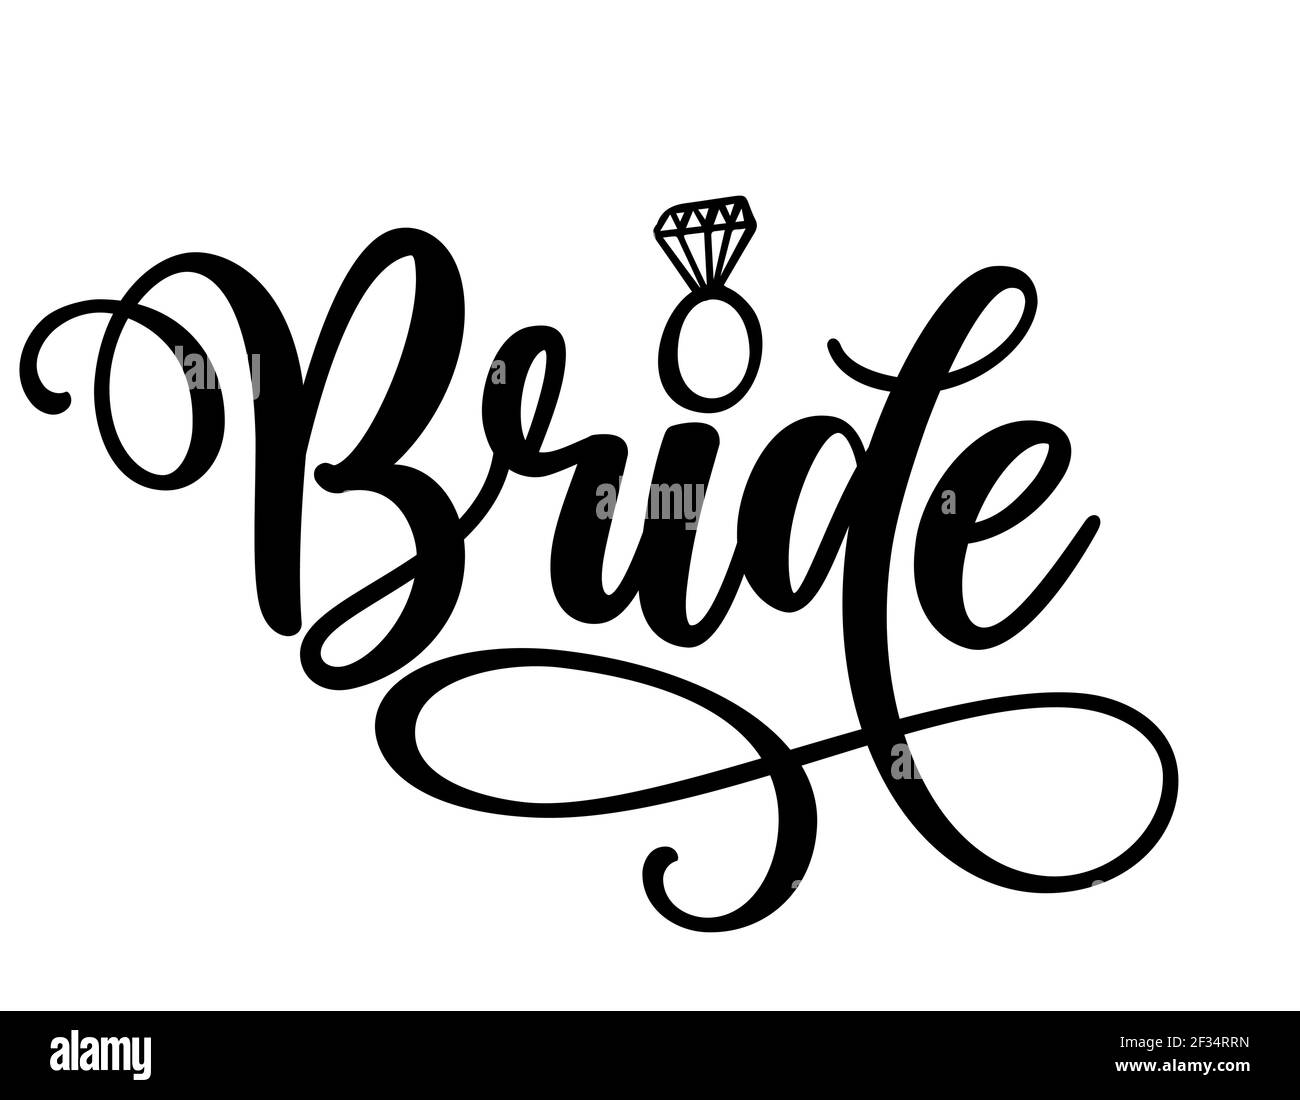 Bride Word - Schwarze Hand beschriftete Zitate mit Diamantring für Grußkarten, Geschenk-Tags, Etiketten, Hochzeit-Sets. und Braut Design. Bachelorette pa Stock-Vektorgrafik - Alamy